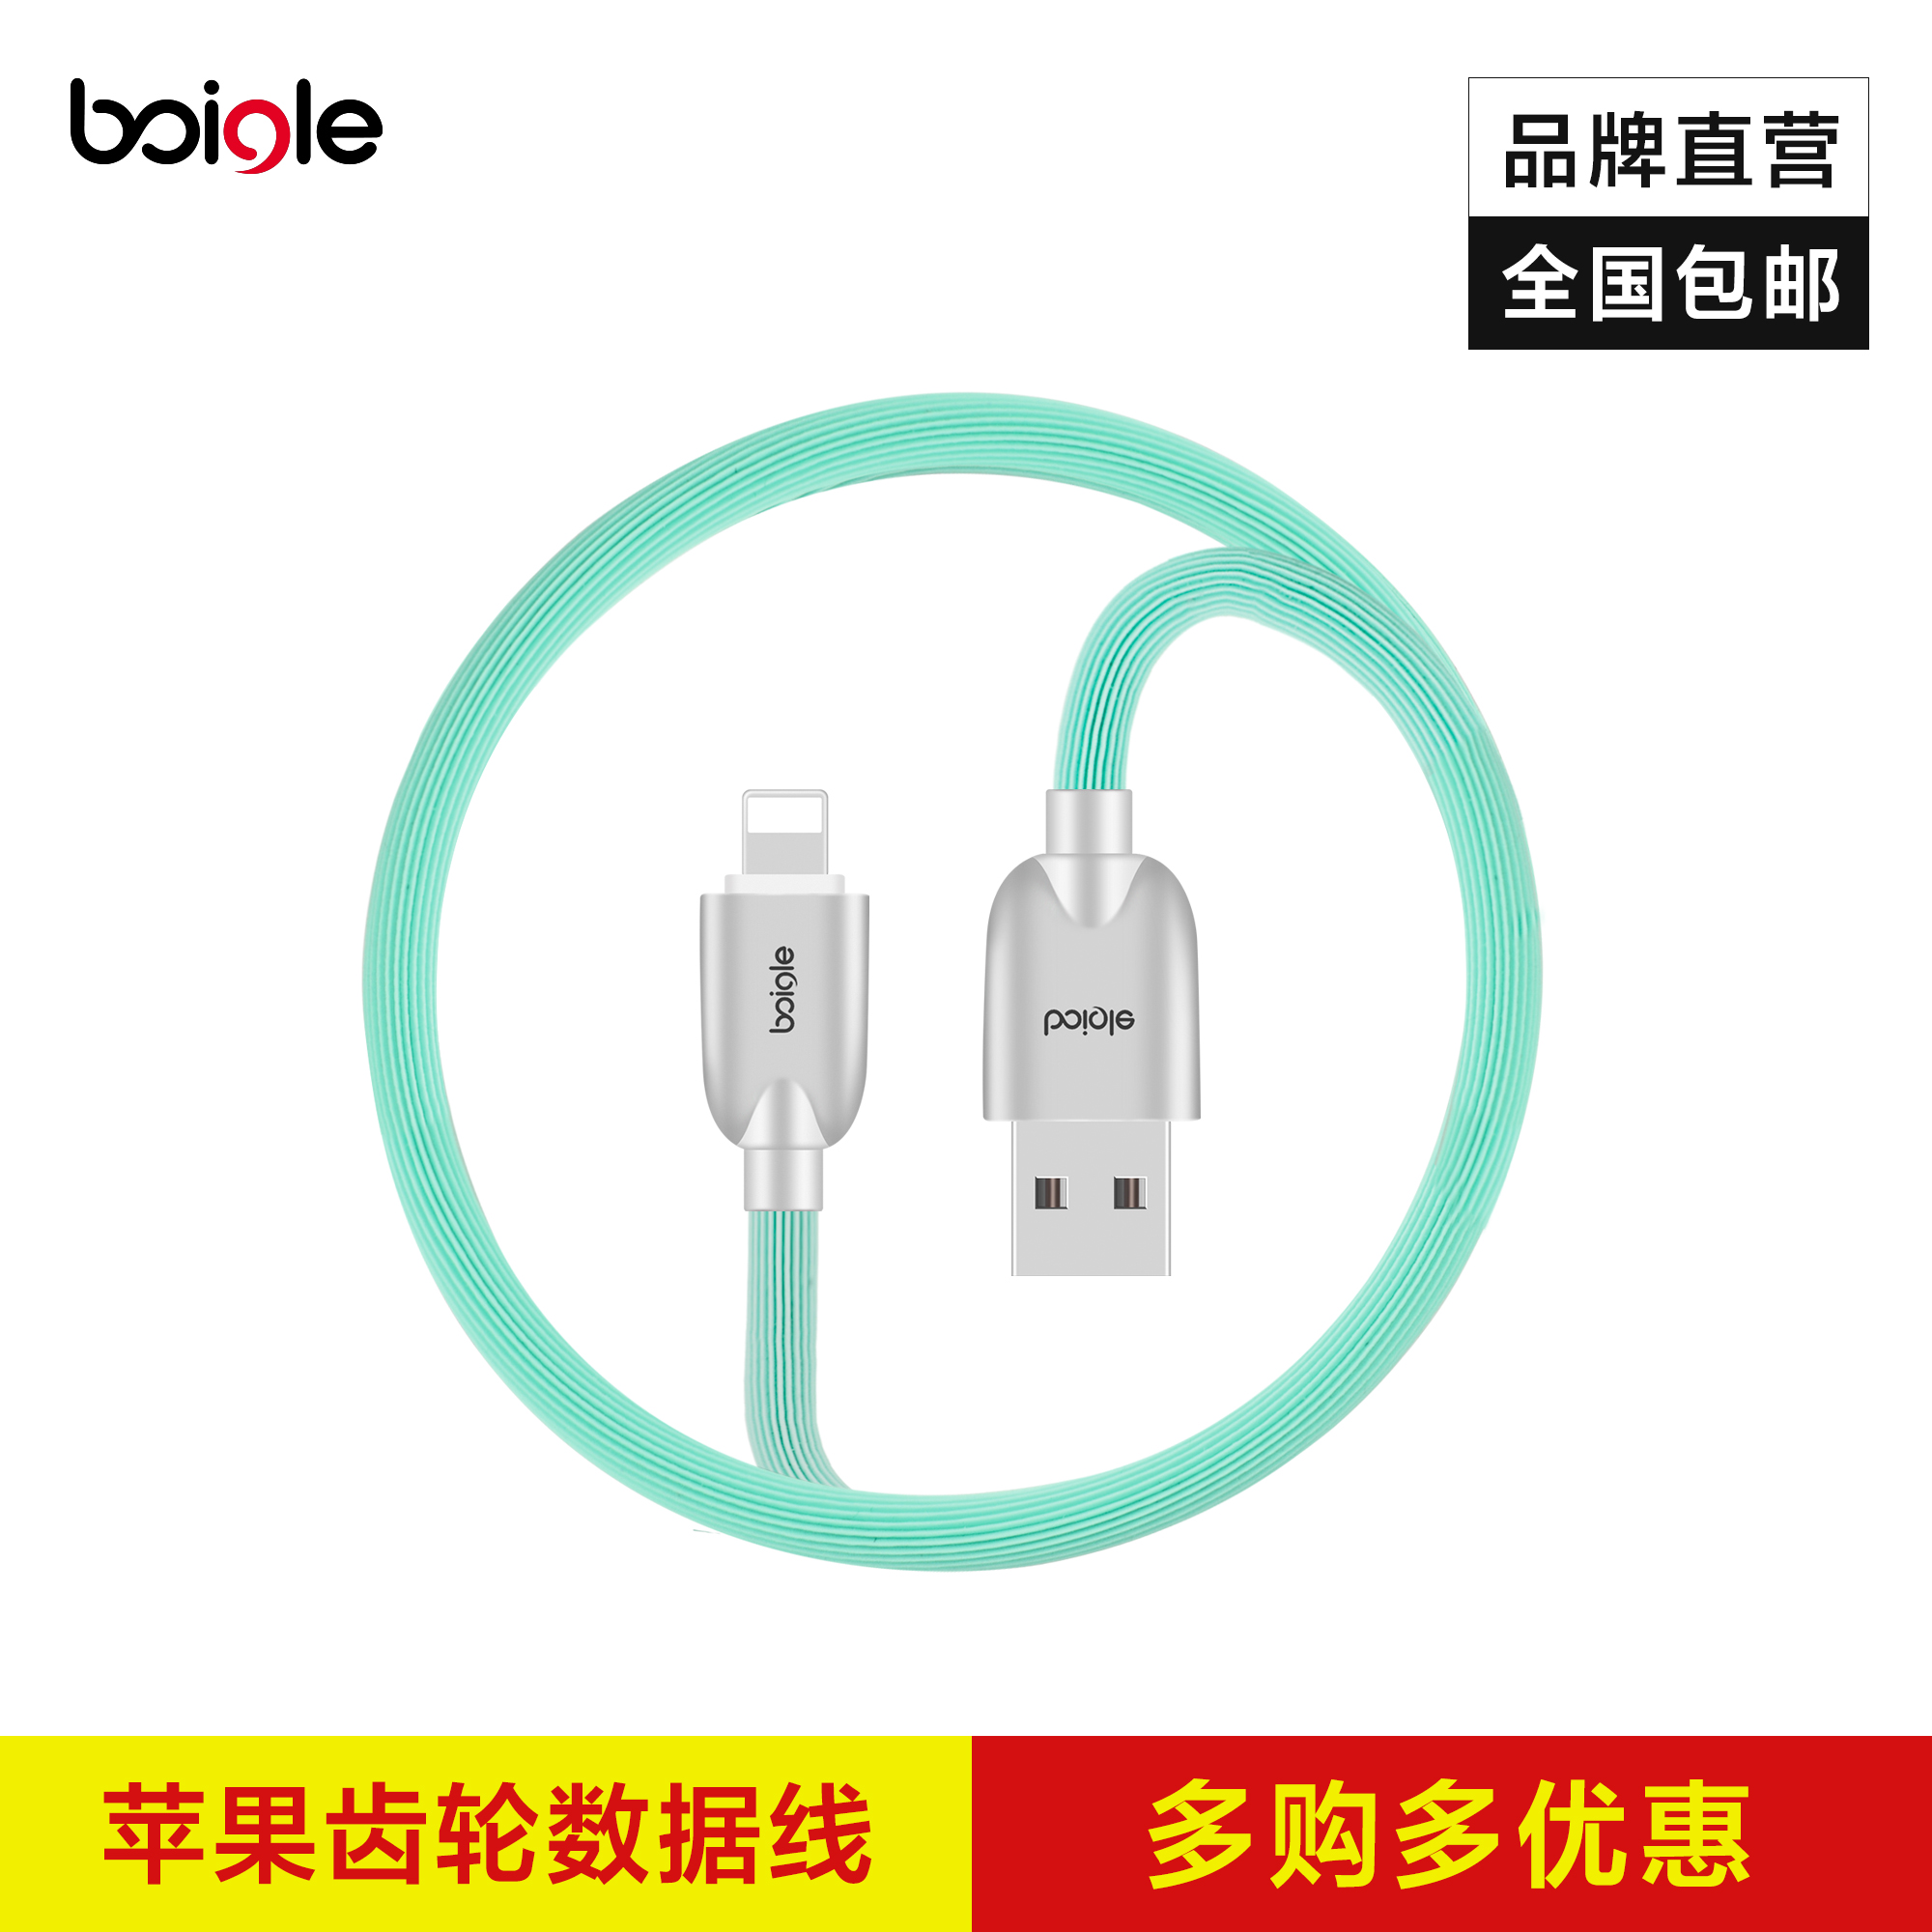 boigle/S10/手机数据线lighting适用于苹果5/6/6P/7充电线1米包邮